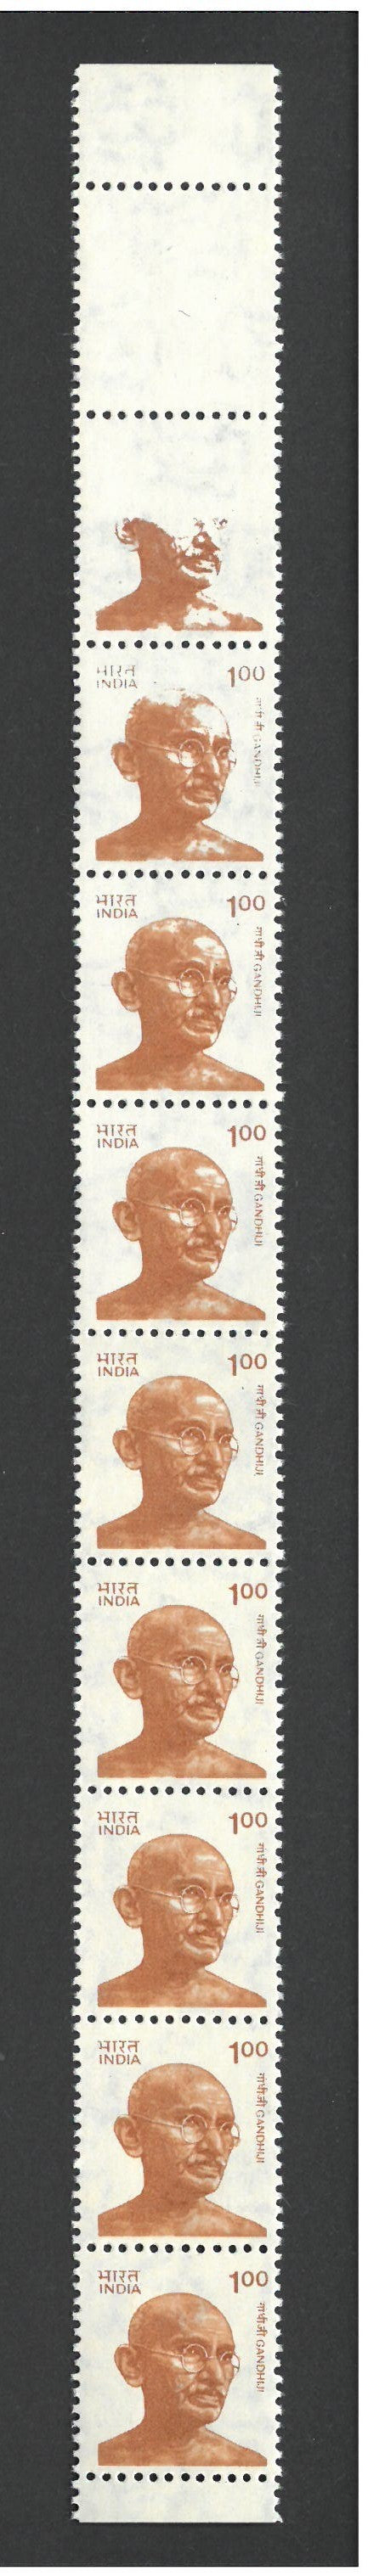 India 1991 1r Gandhi Missing Design on top Two Stamps. SG1436a VIND1436B